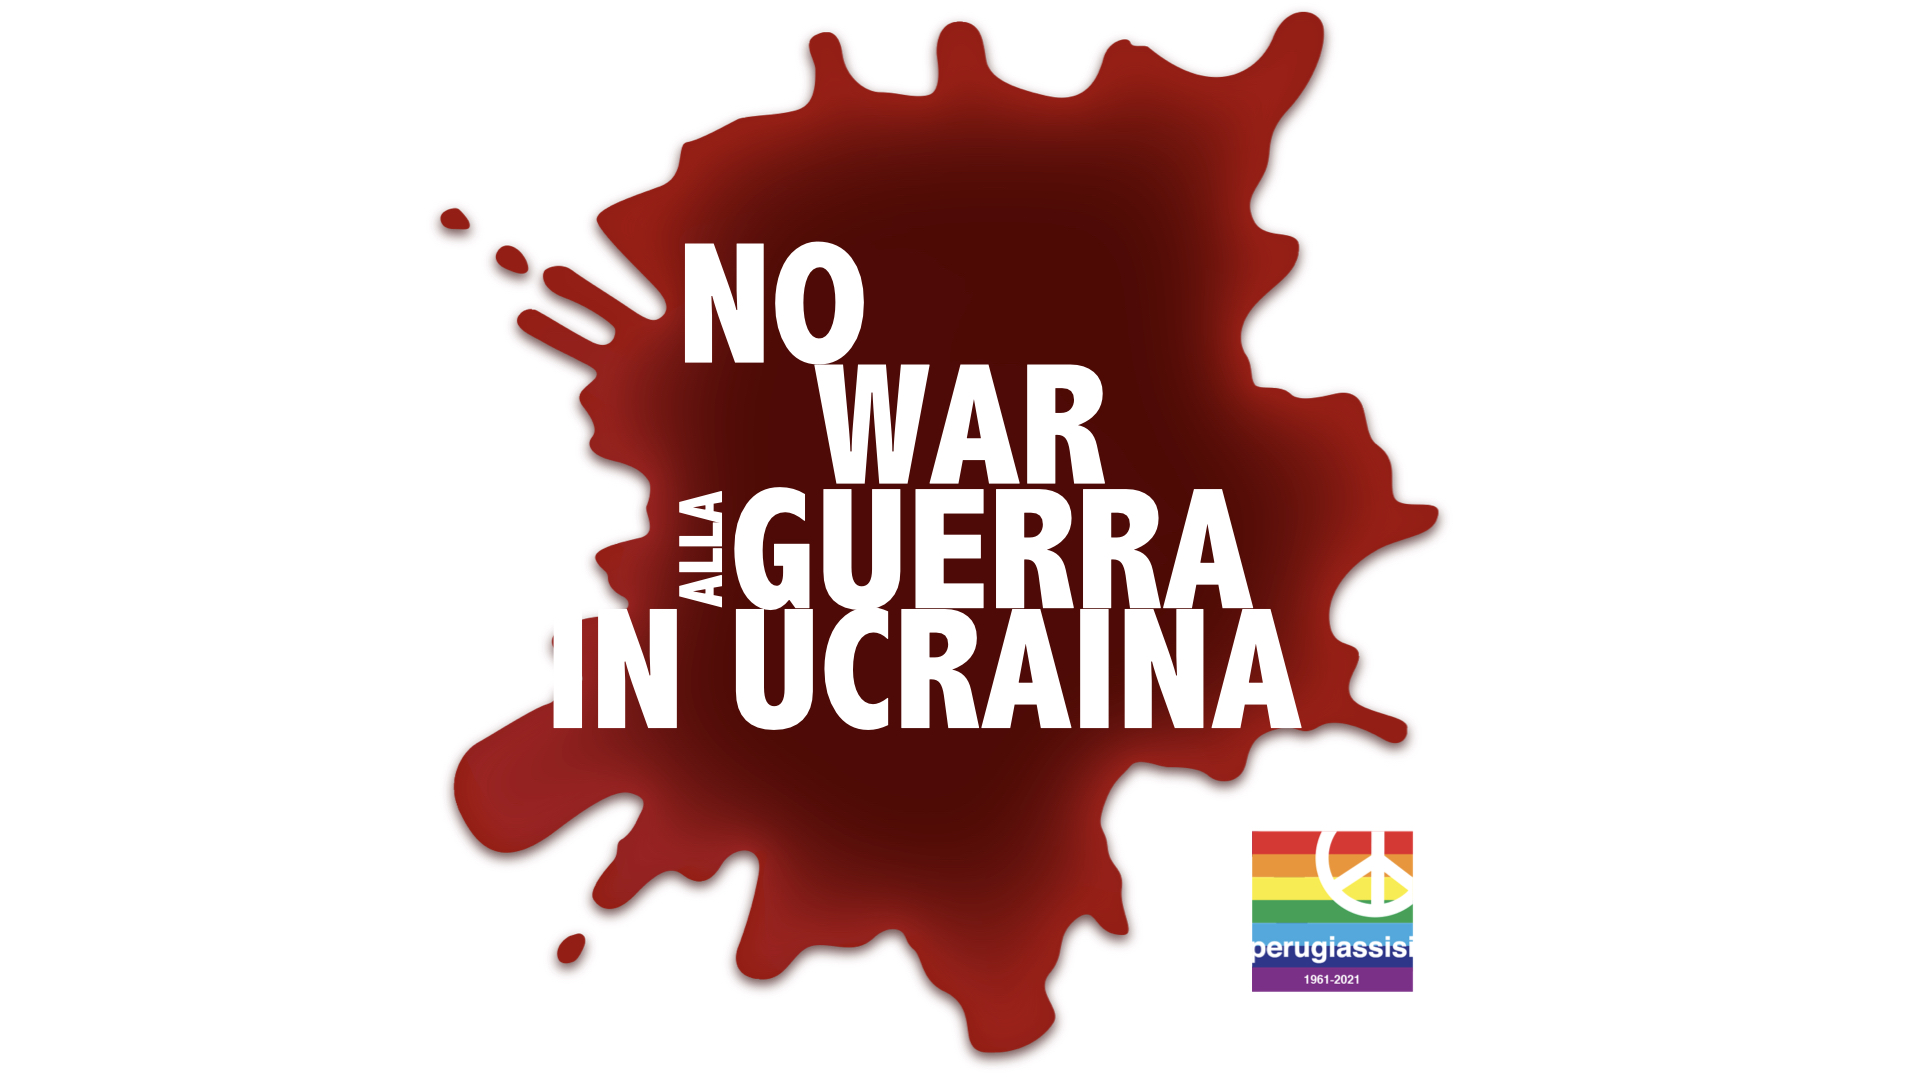 Appelo di pace Contro la guerra in Ucraina. Su una macchia si sangue c'è scritto "No war - alla guerra in Ucraina"